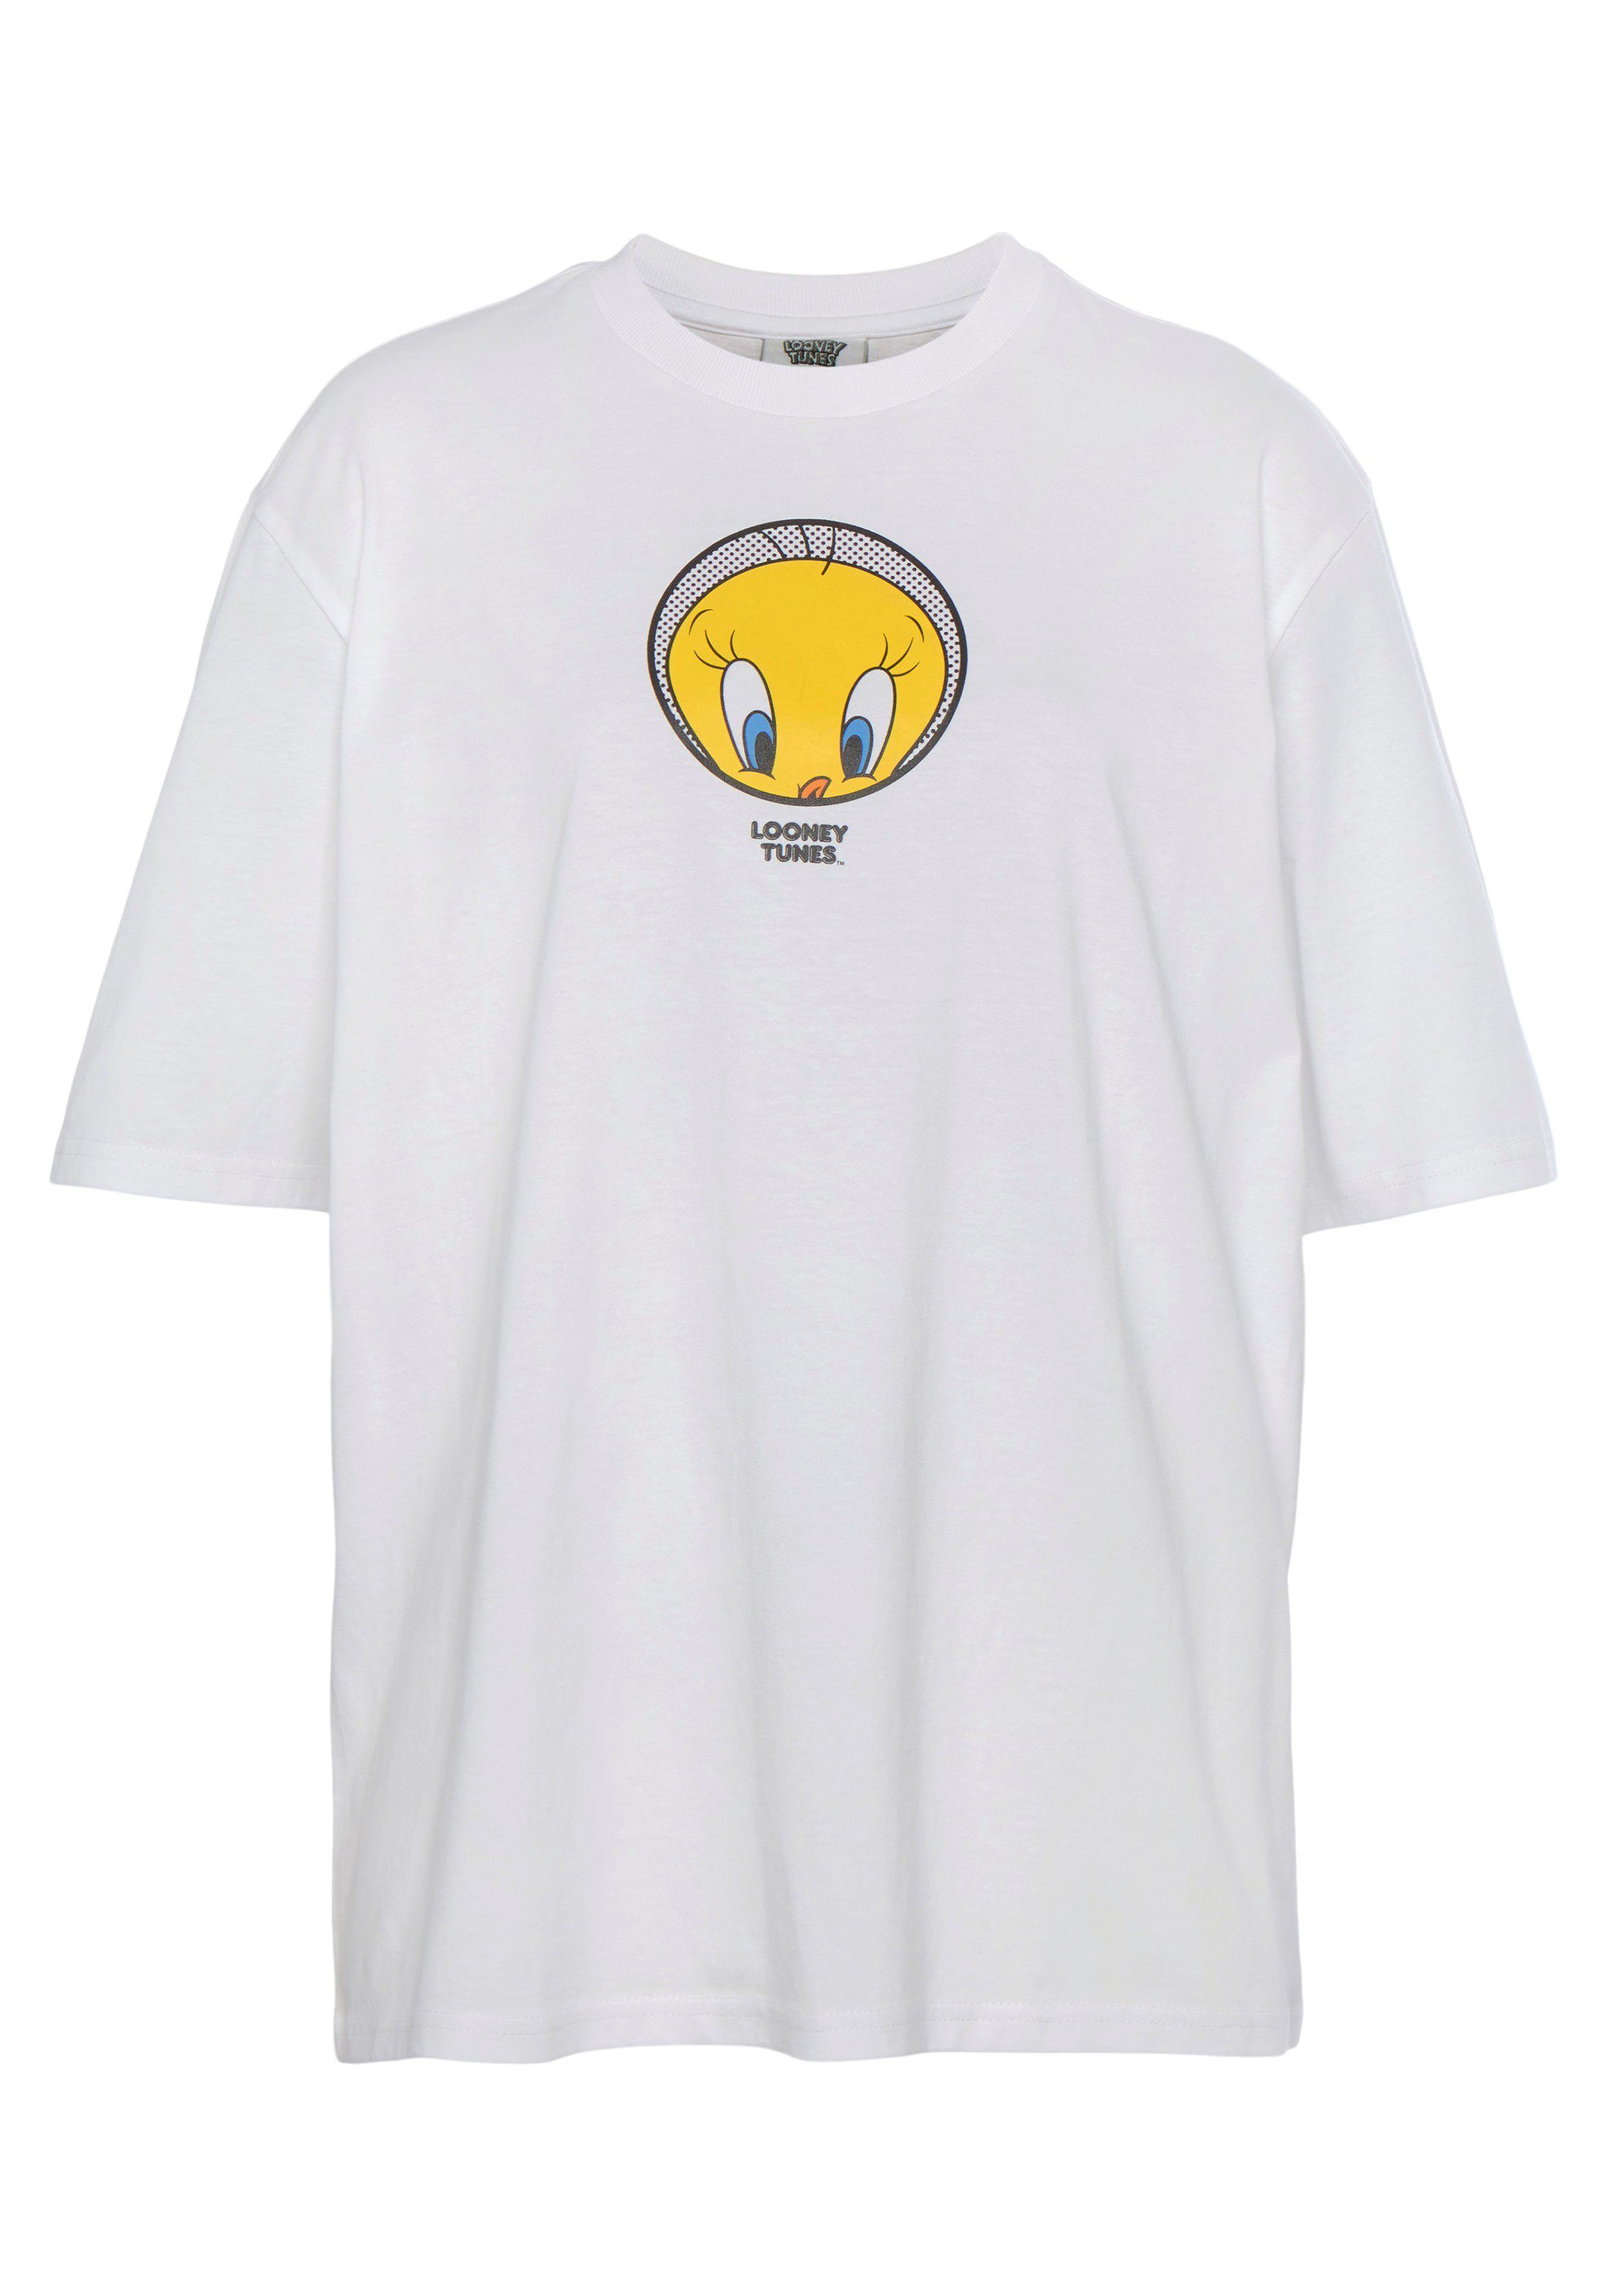 New T-Shirt Capelli T-Shirt white York Tweety